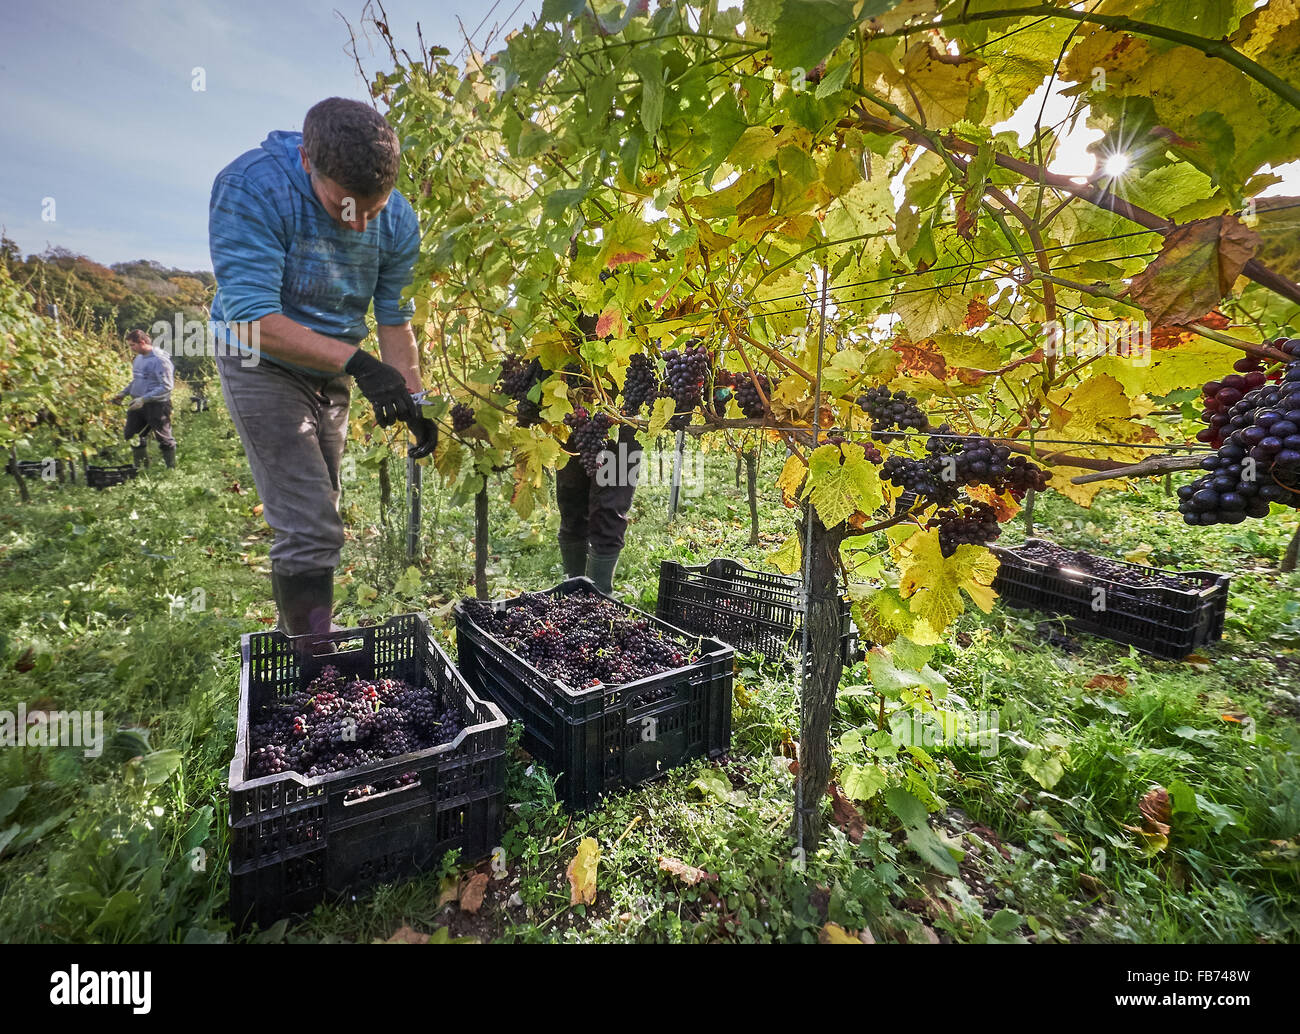 Viticoltore raccolto di uve rosse in un vigneto Foto Stock